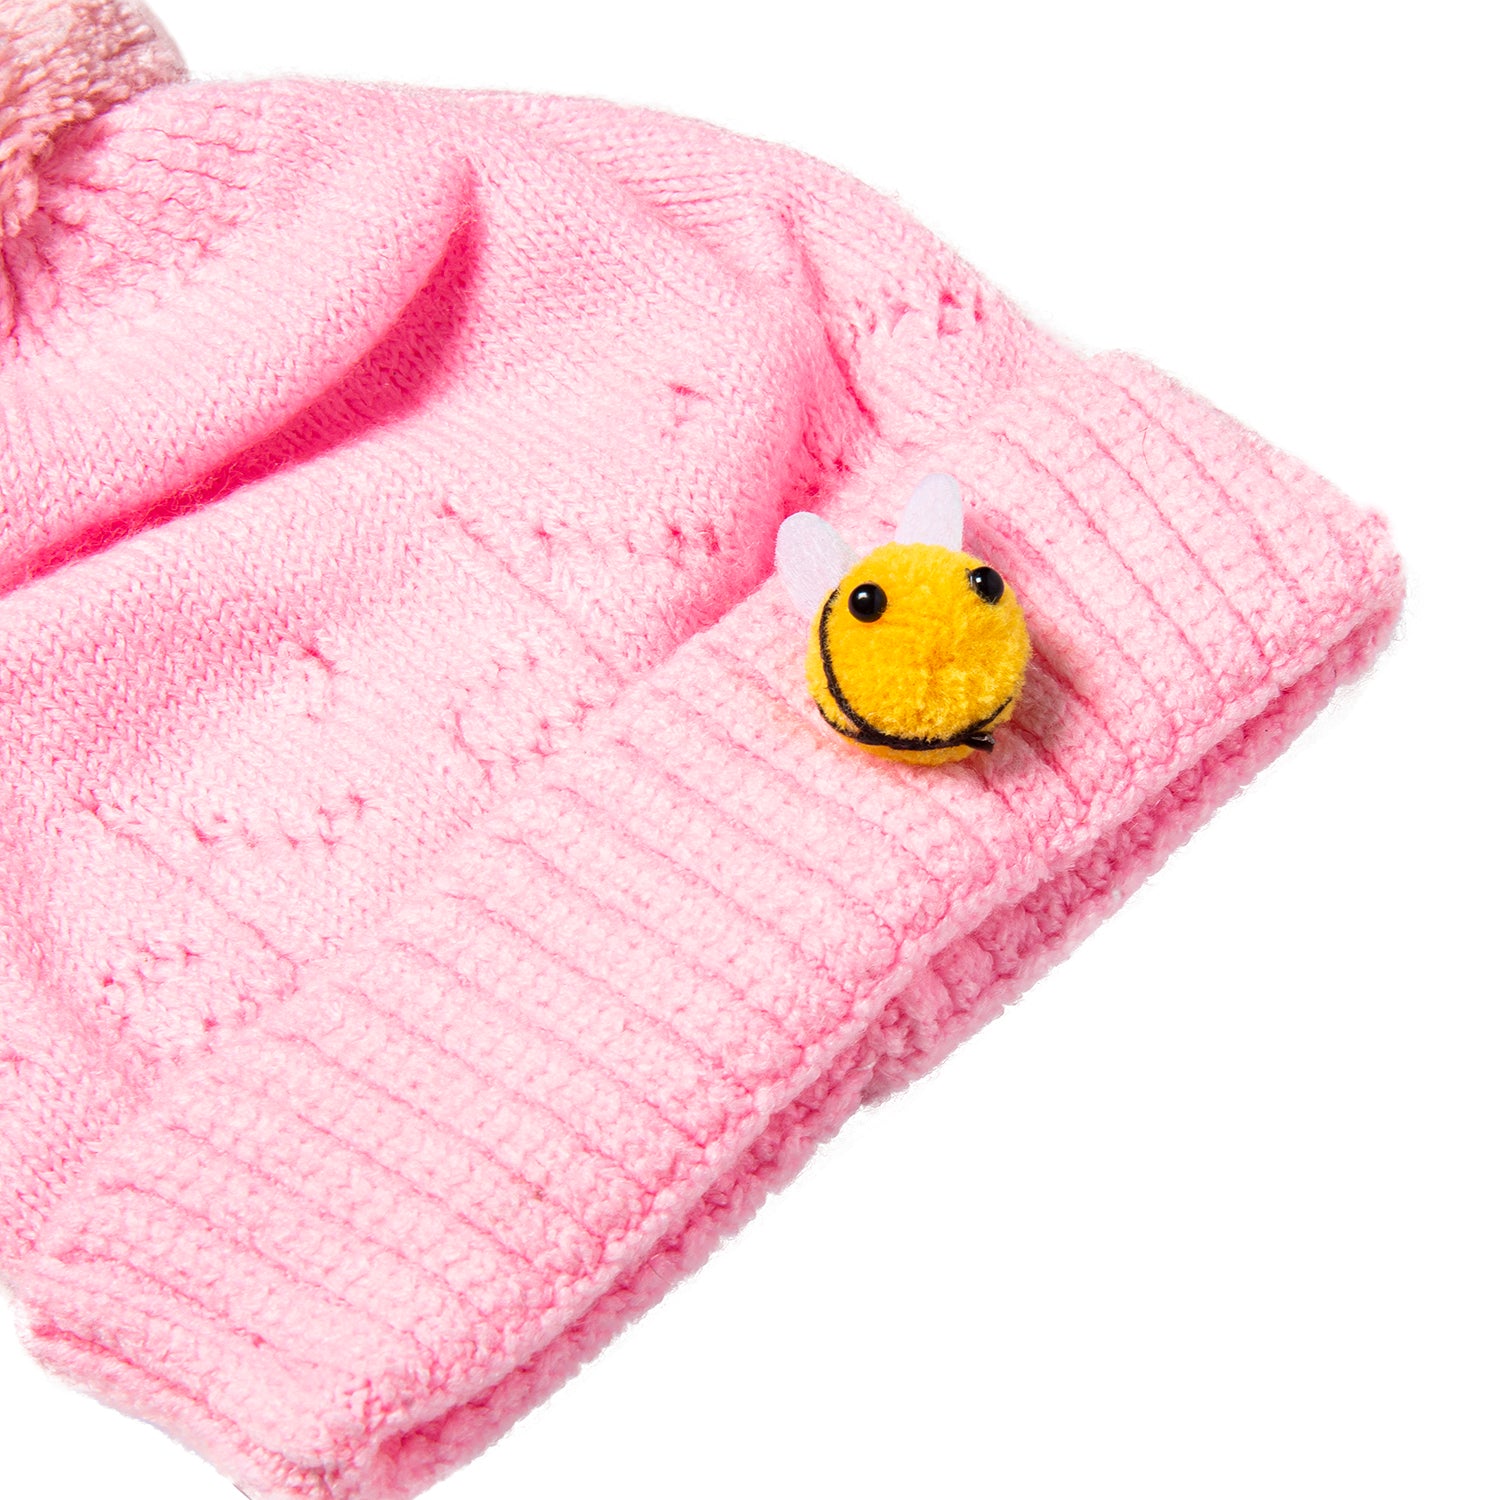 Knit Woollen Cap Honey Bee Pink - Baby Moo